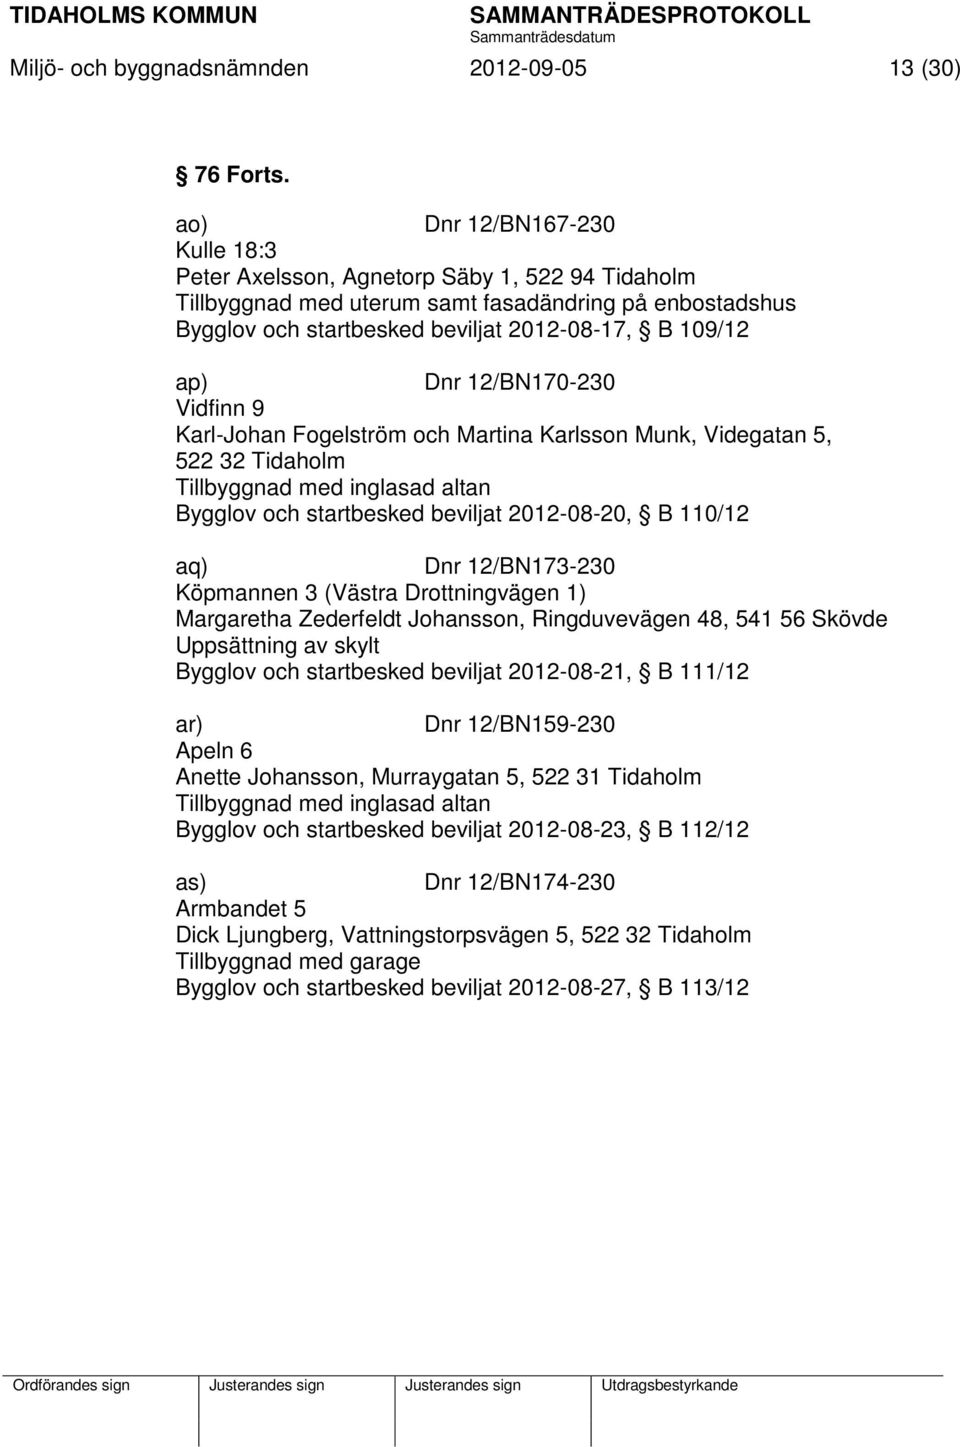 12/BN170-230 Vidfinn 9 Karl-Johan Fogelström och Martina Karlsson Munk, Videgatan 5, 522 32 Tidaholm Tillbyggnad med inglasad altan Bygglov och startbesked beviljat 2012-08-20, B 110/12 aq) Dnr